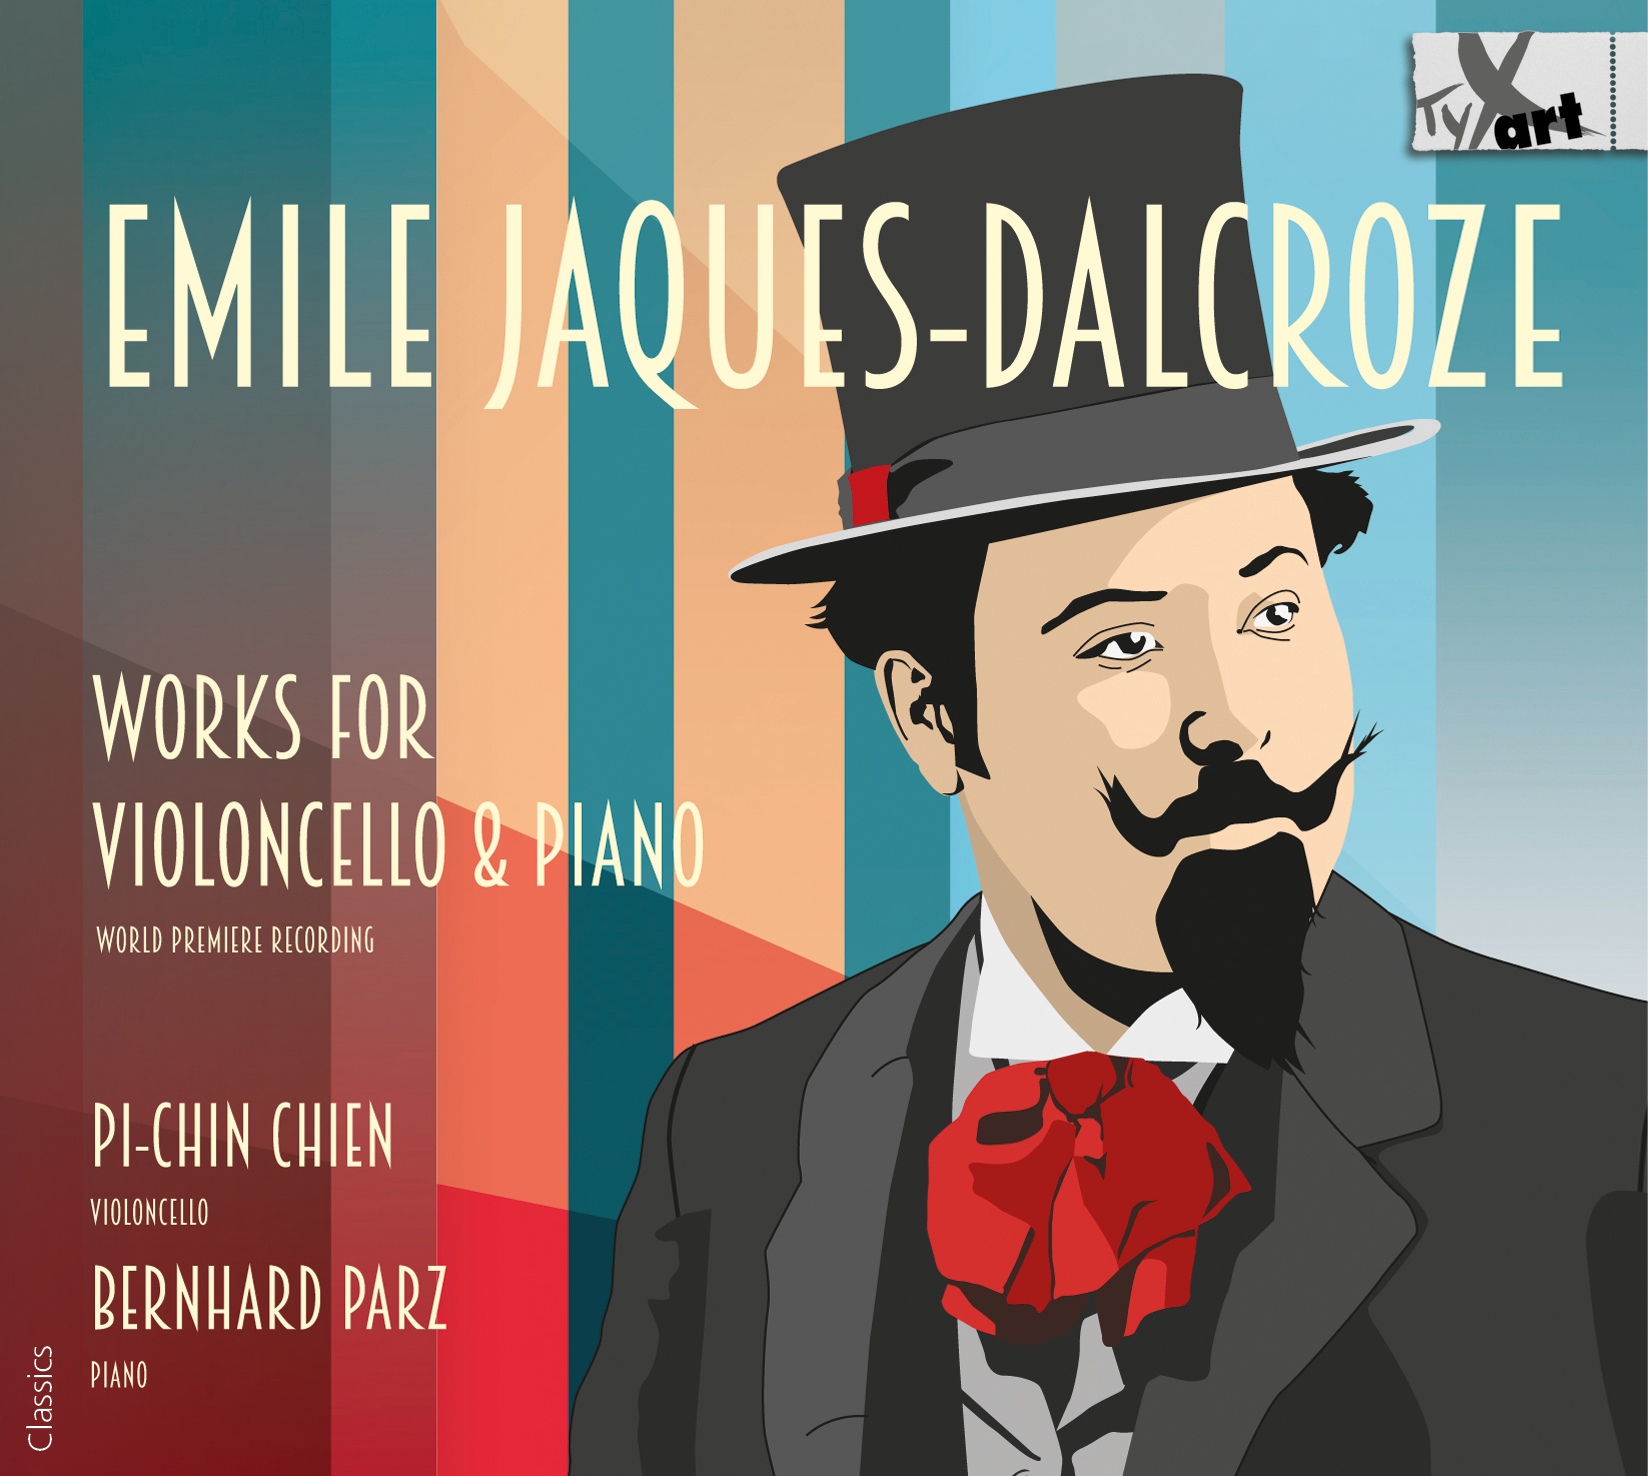 Emile Jaques-Dalcroze: Werke für Violoncello und Klavier - Pi-Chin Chien & Bernhard Parz